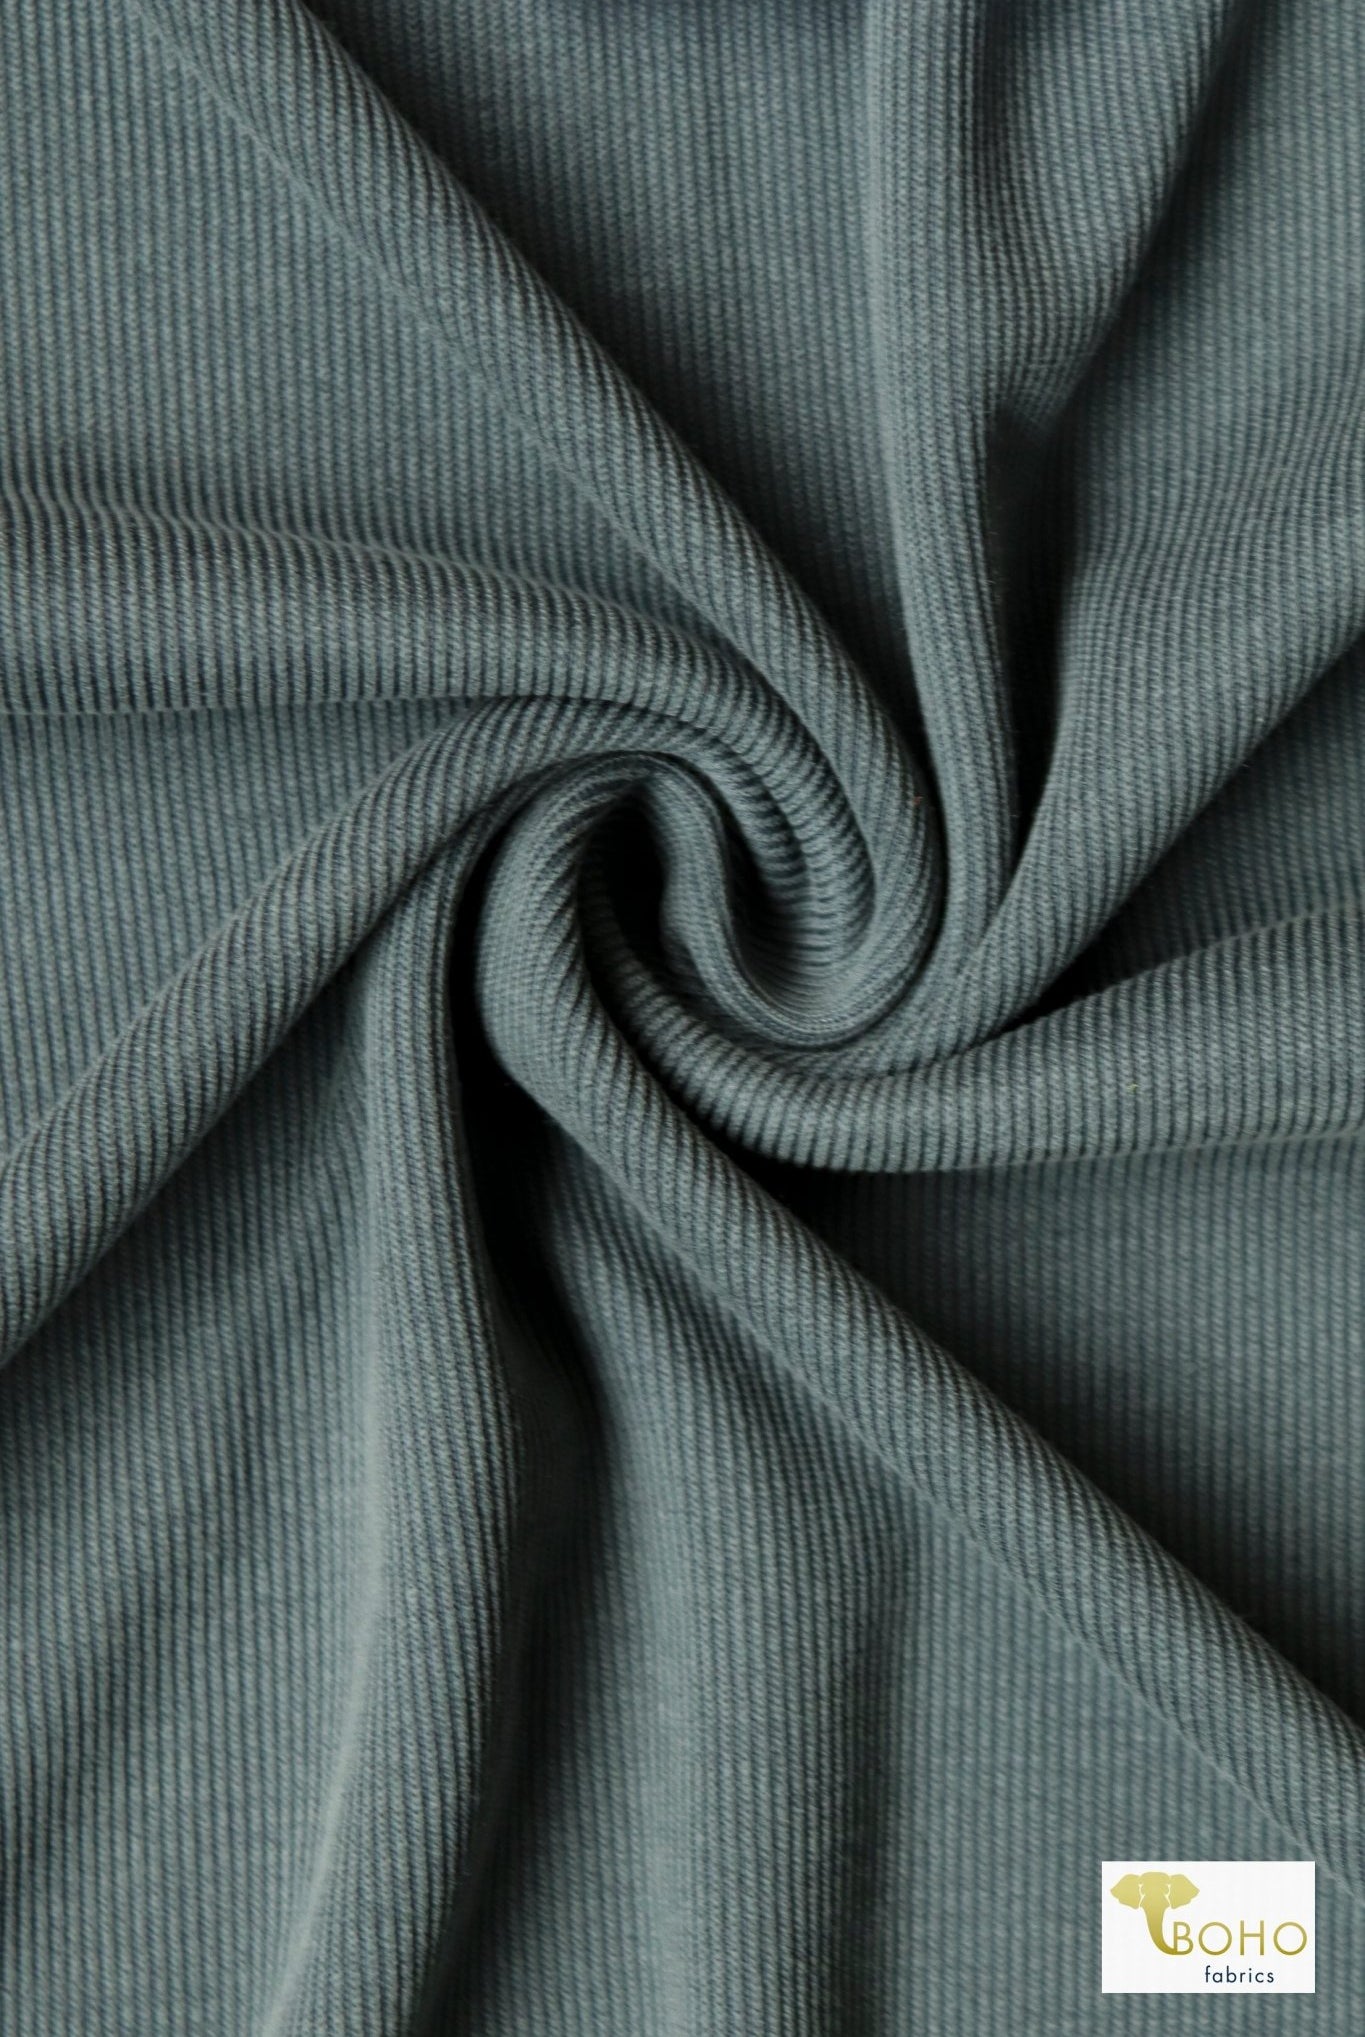 Tourmaline Smoke, Cupro Rib Knit Fabric - Boho Fabrics - Cupro, Knit Fabric